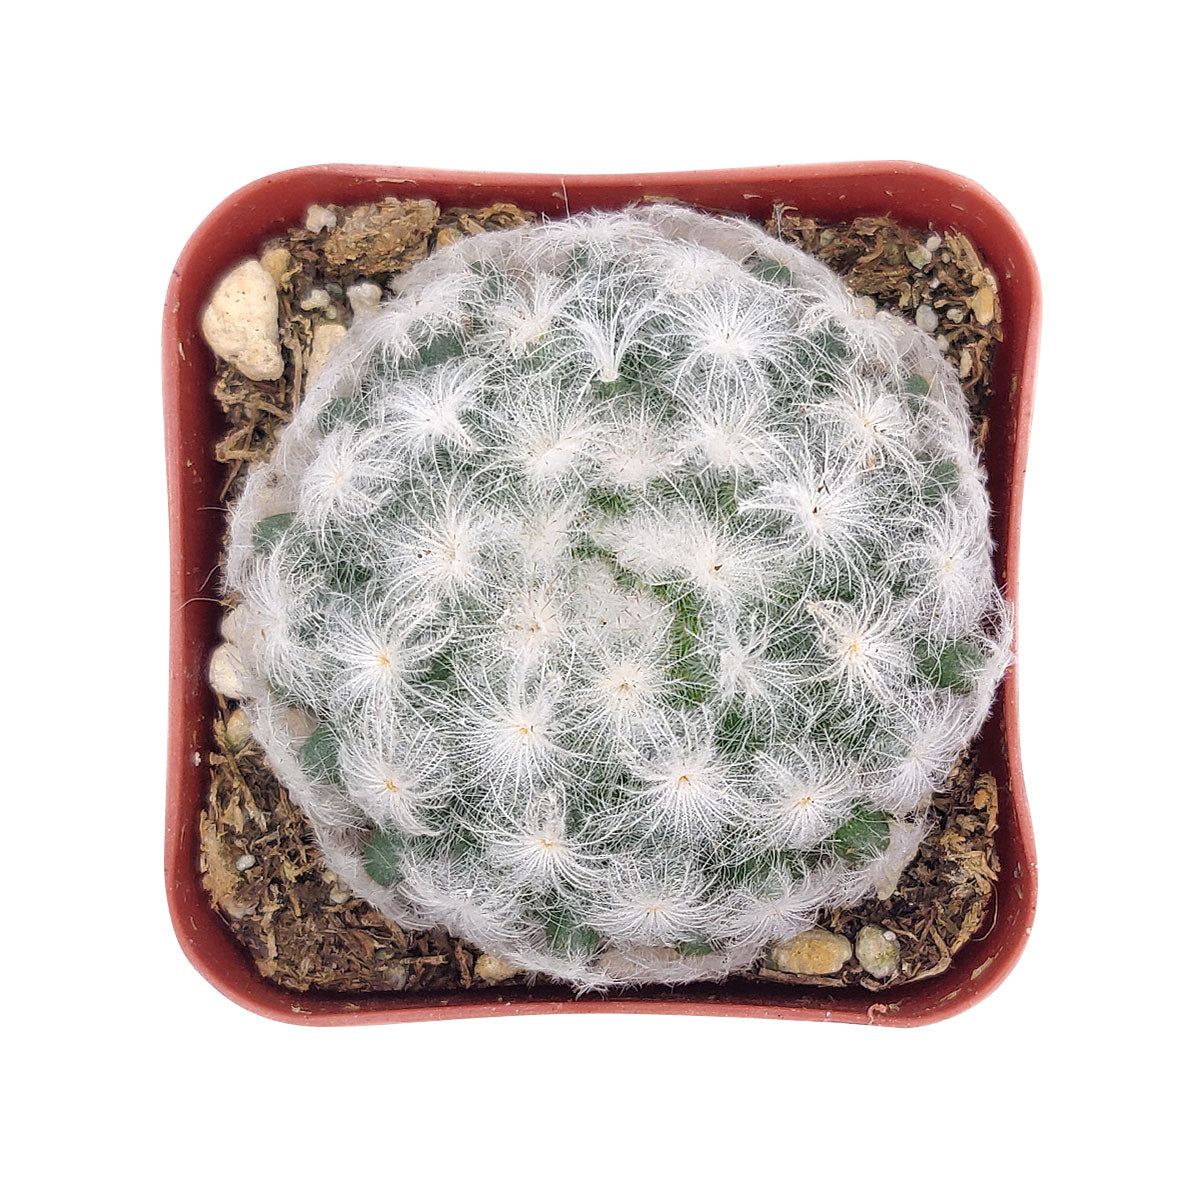 Mammillaria Plumosa 'Feather Cactus'